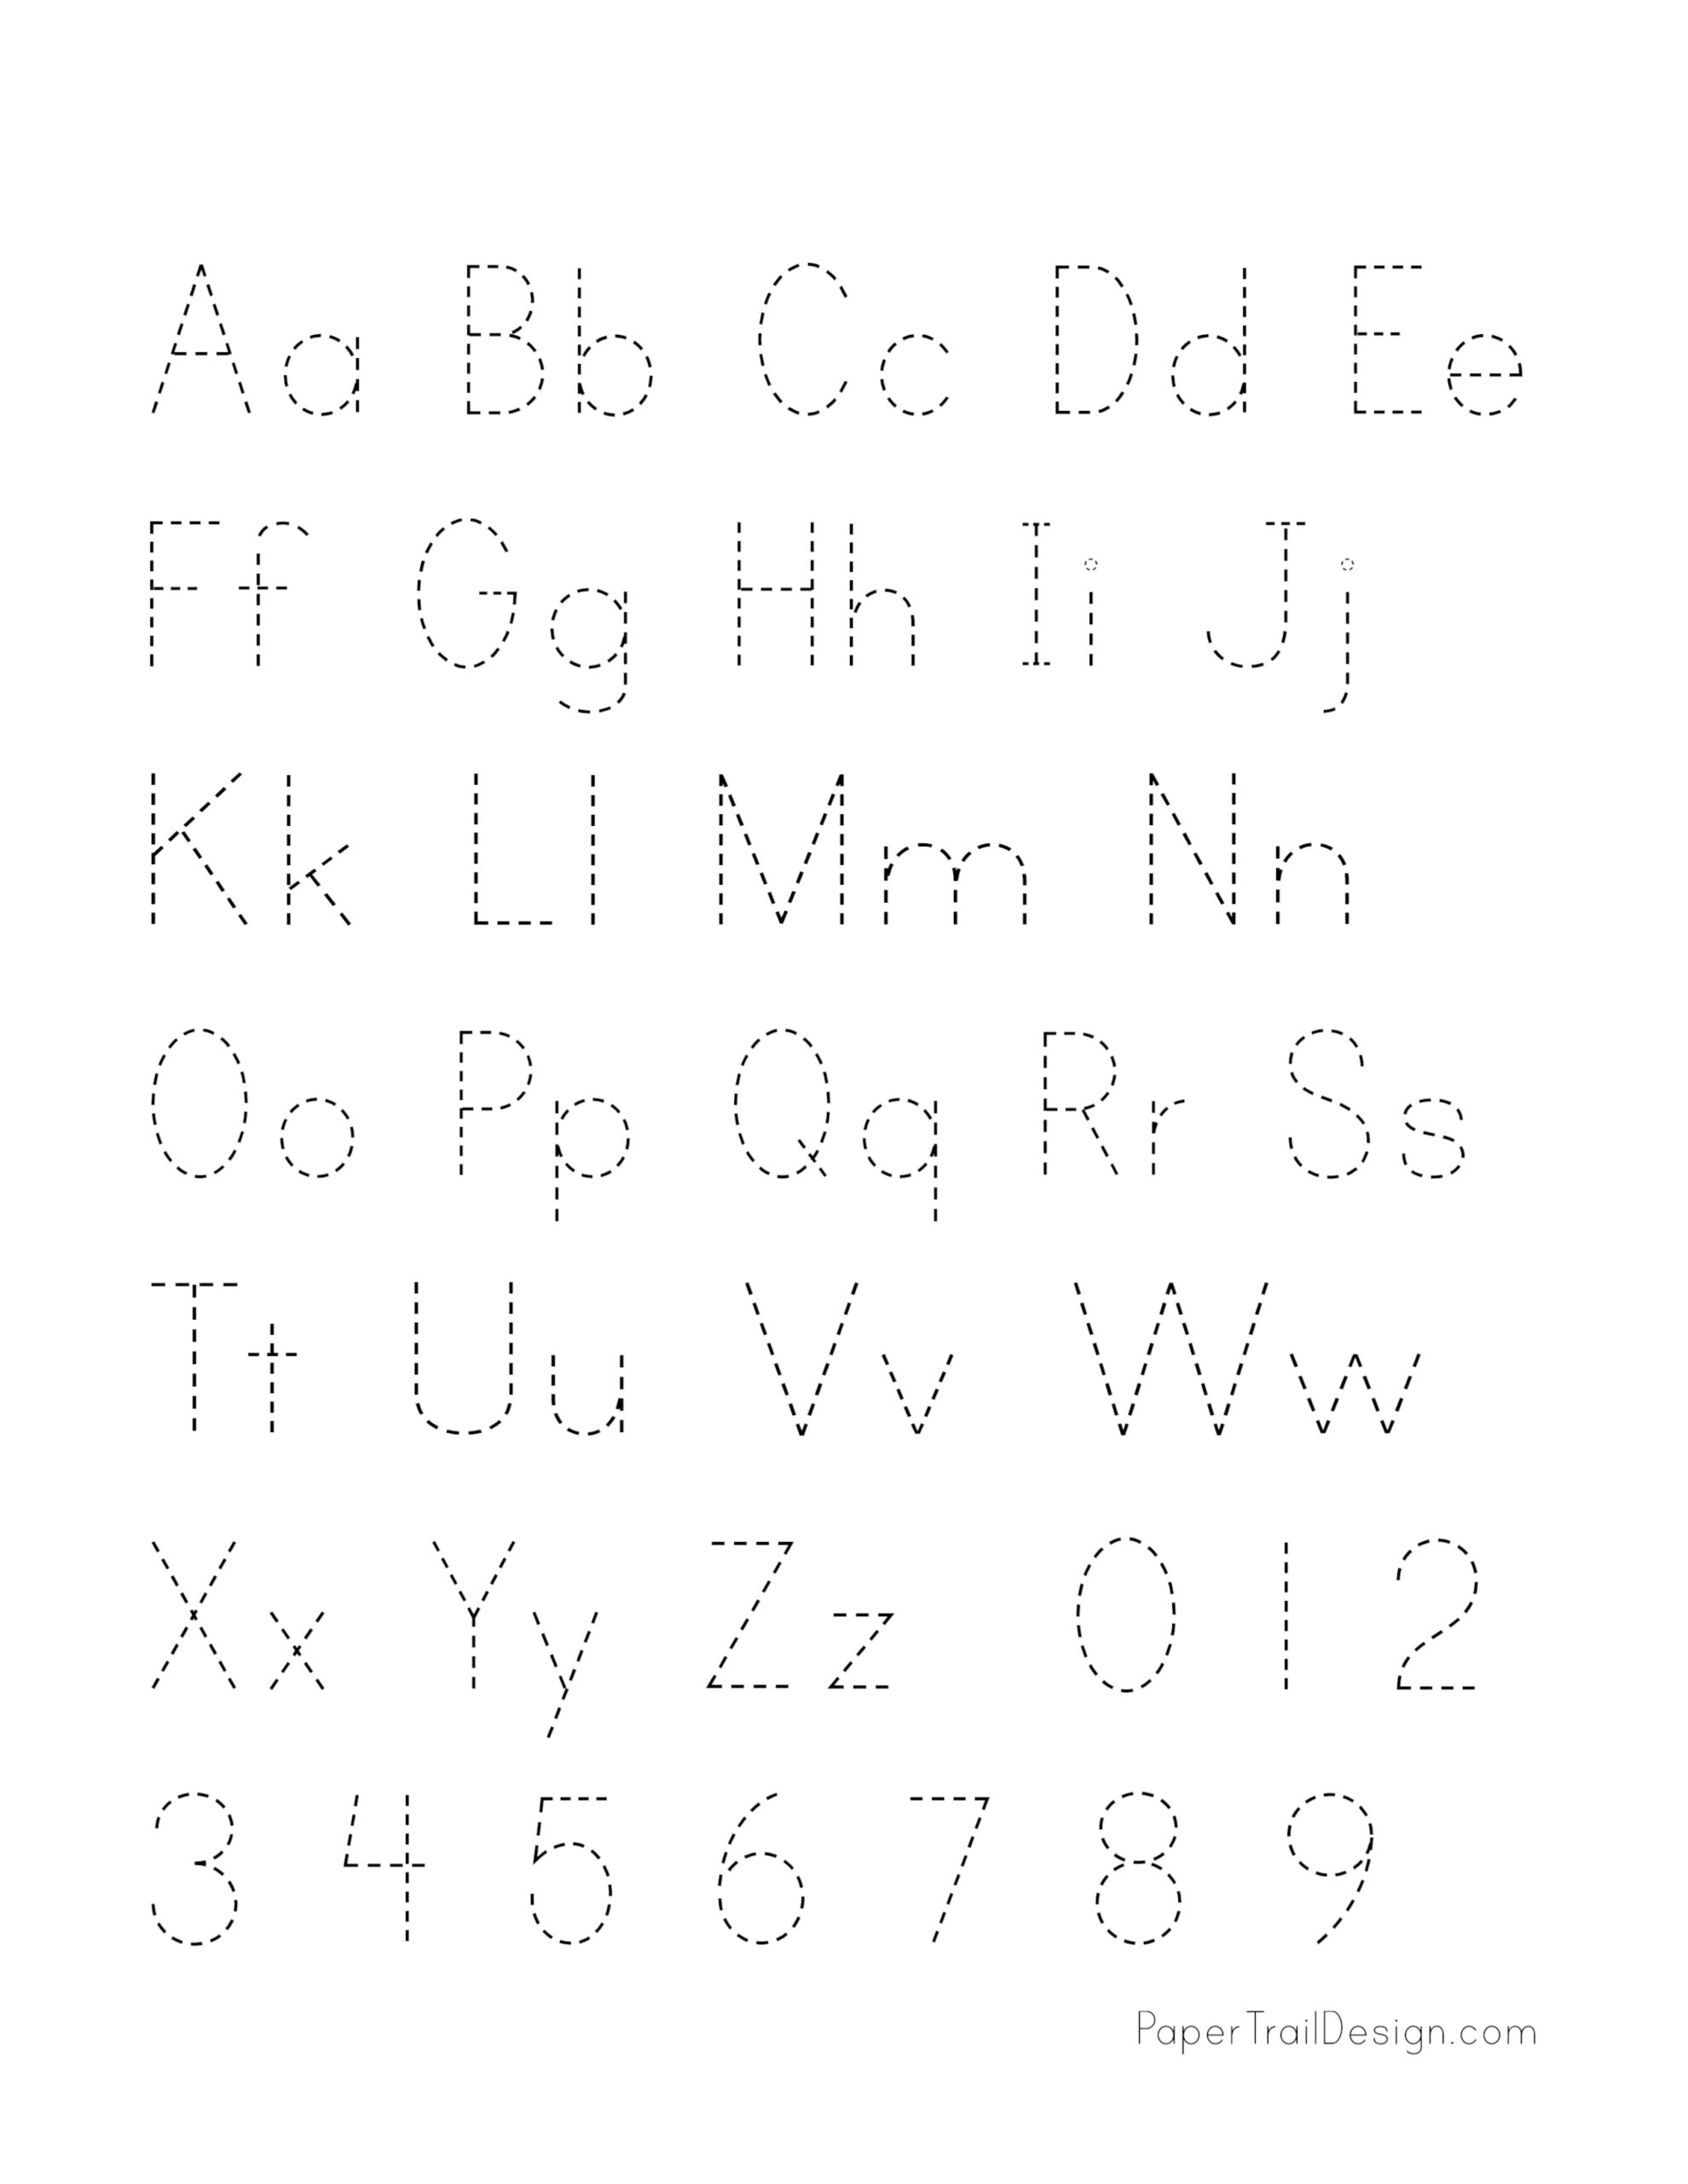 us-letter-abc-alphabet-letters-longer-version-hand-lettering-font-set-printable-practice-sheets